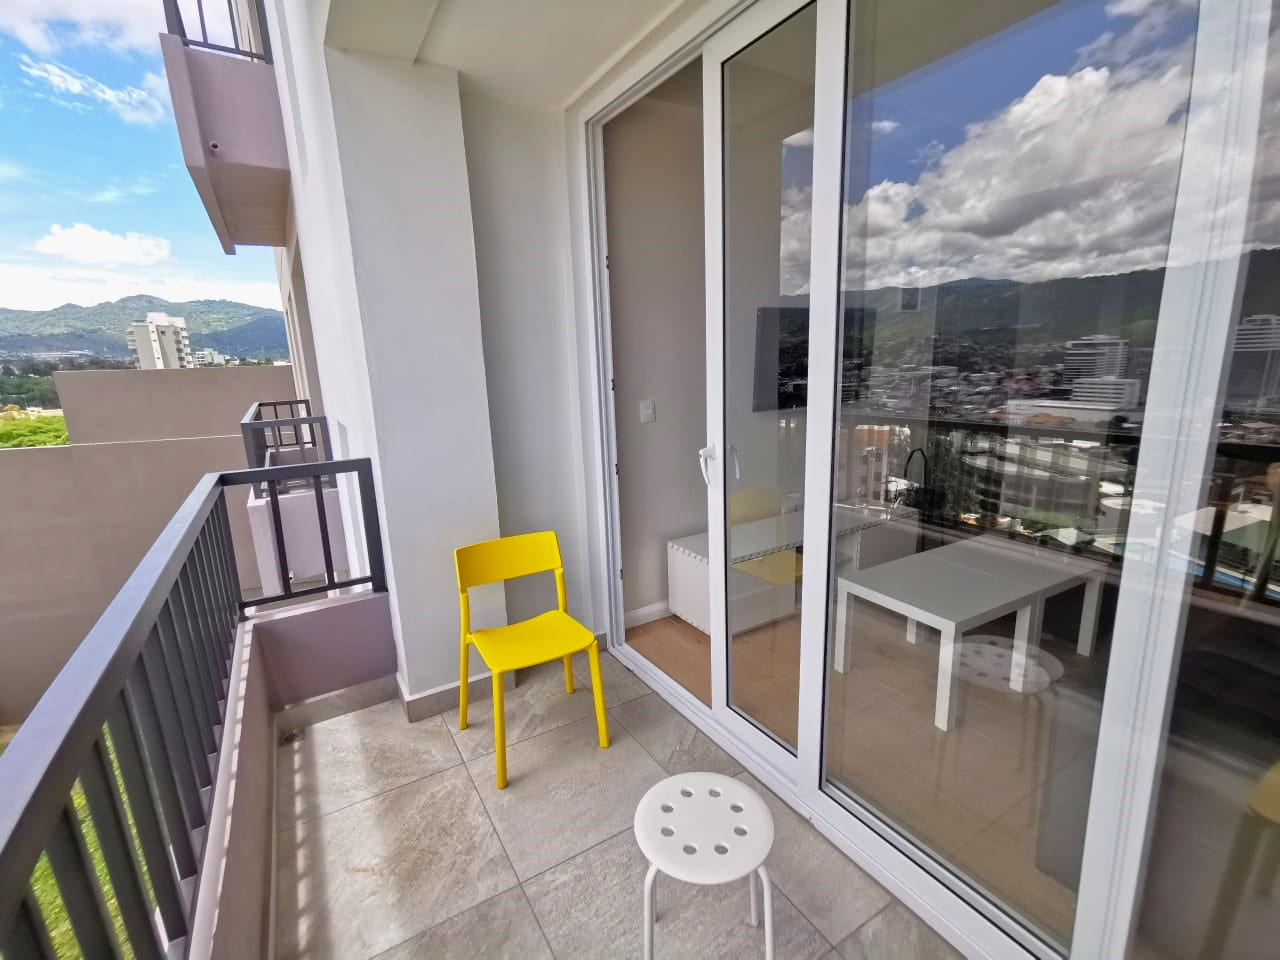 Área de terraza con puerta deslizable, cuenta con un barandal de color oscuro, sillas de color amarillo para apreciar la hermosa vista de la ciudad.